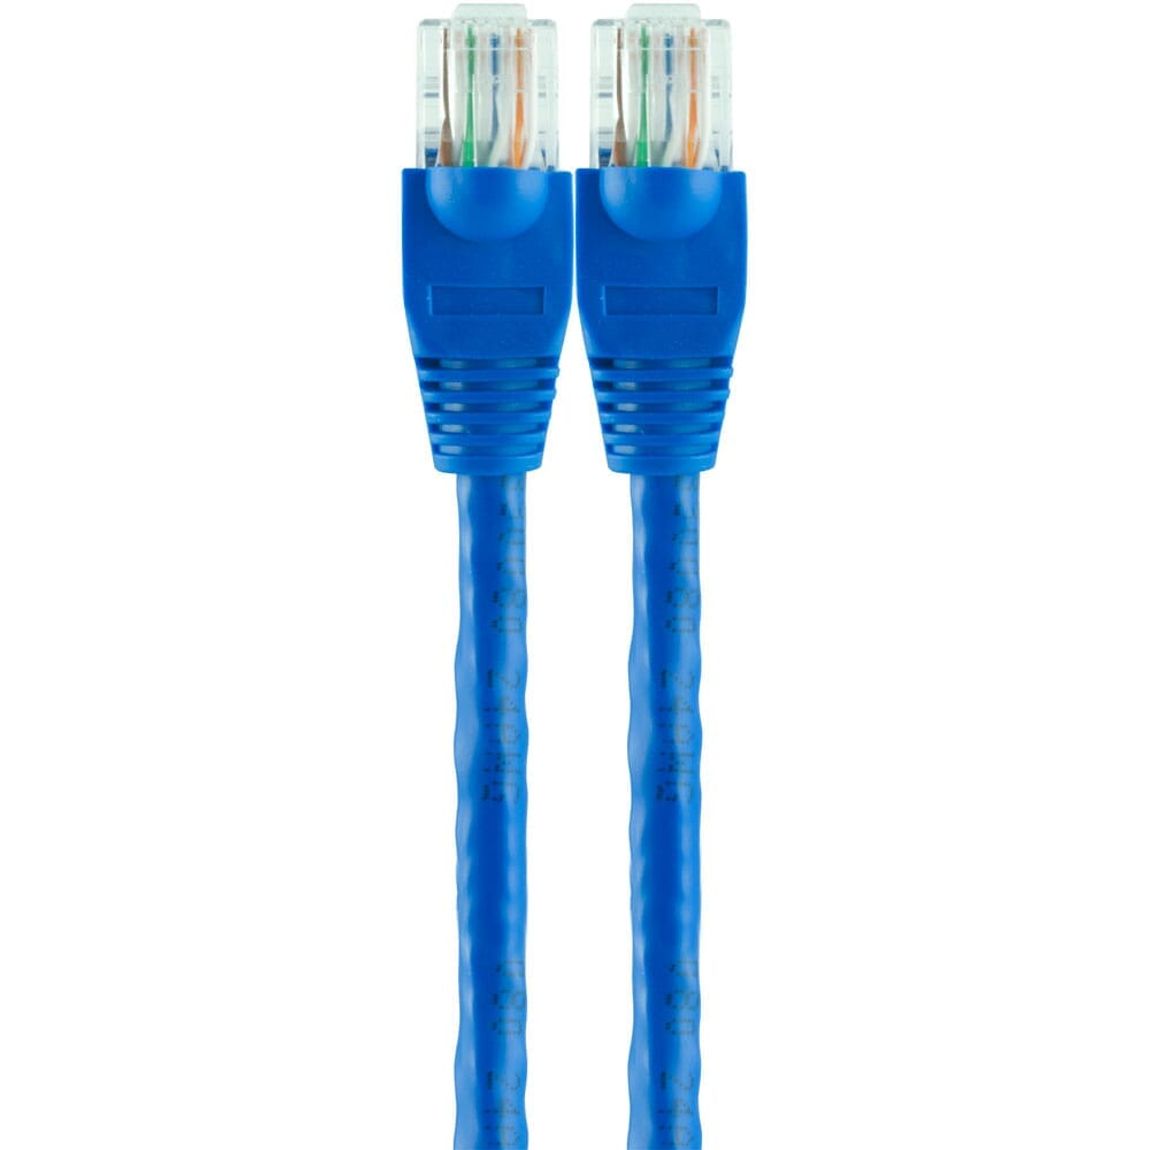 Cable de Red GE 2m Azul | Cables Y Adaptadores - OfficeMax